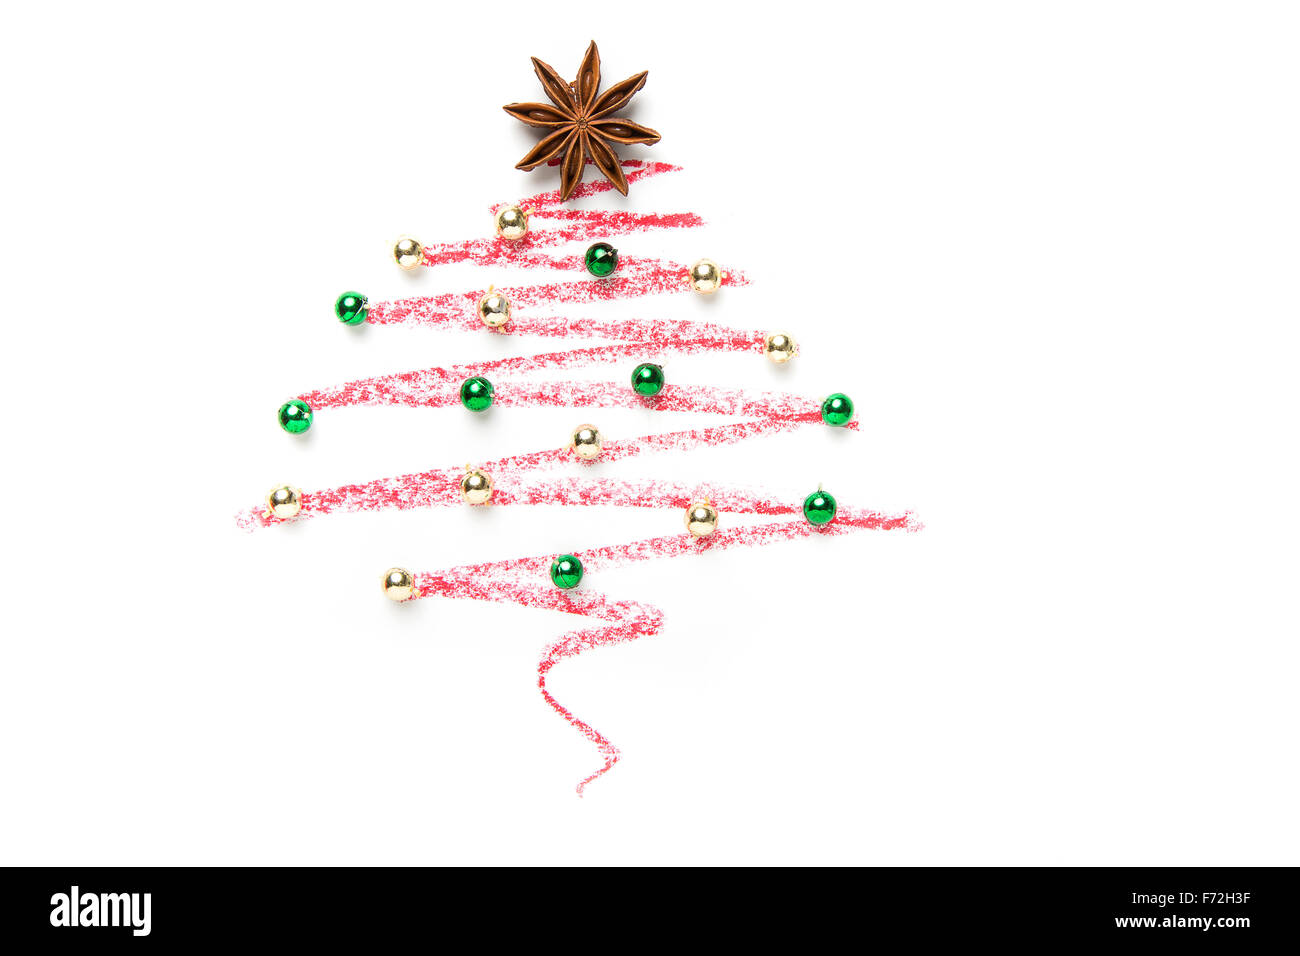 Un árbol de Navidad elaborado con anís estrella, aislado sobre fondo blanco. Foto de stock